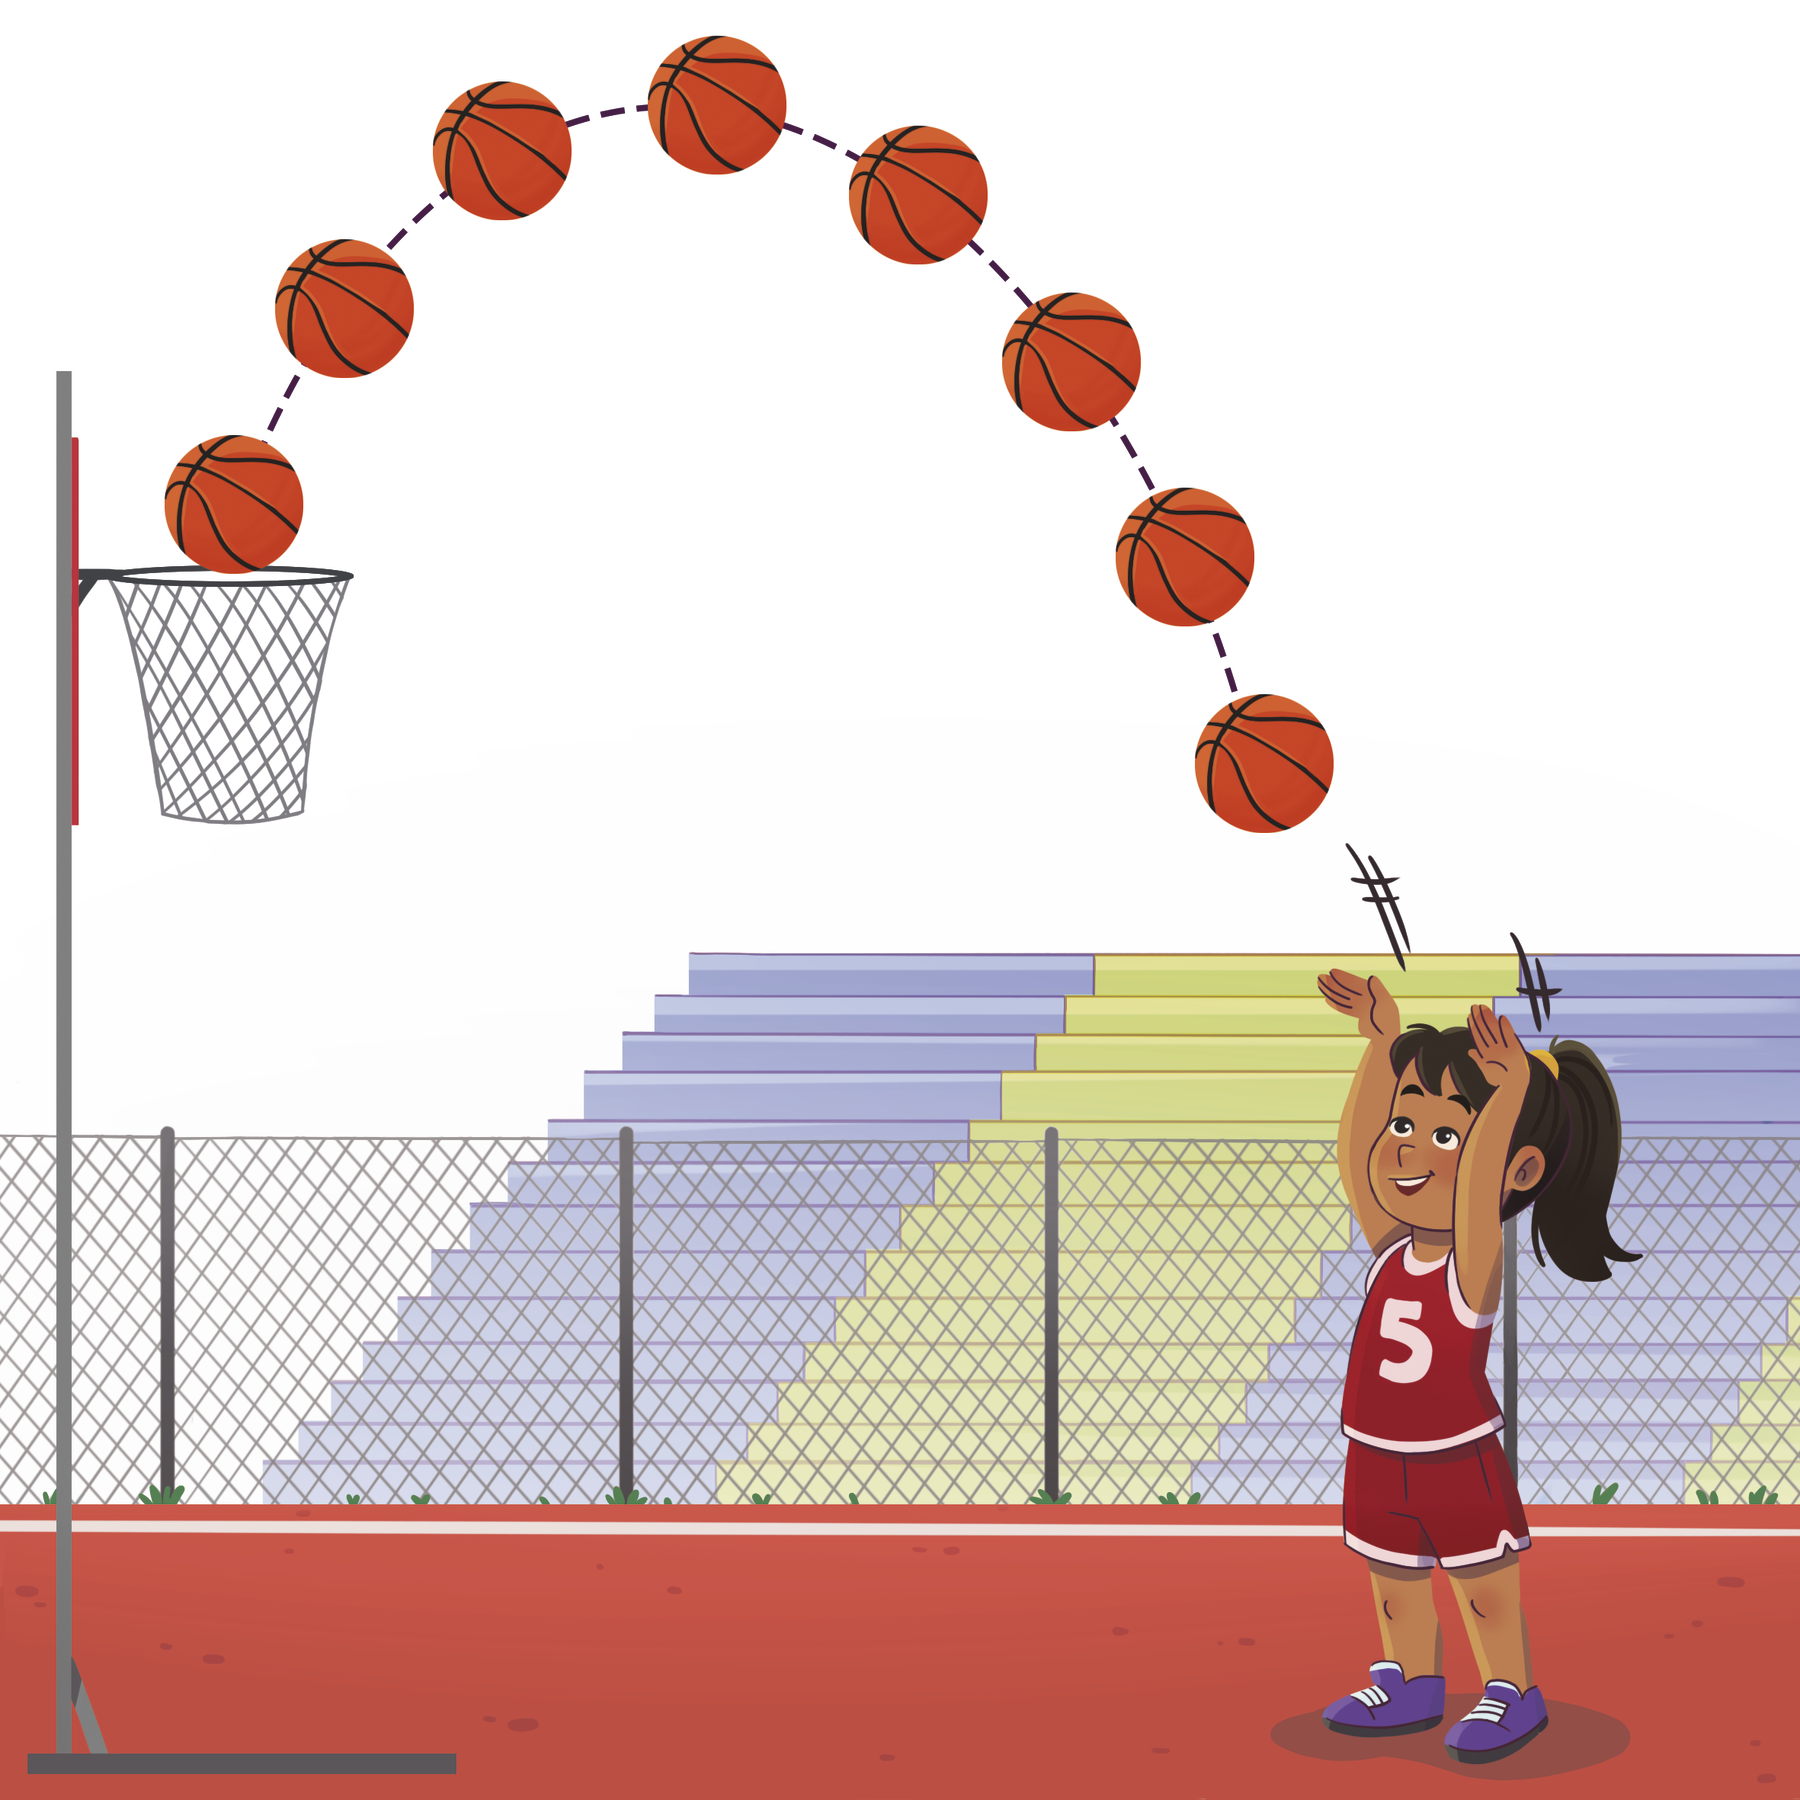 Ilustração. Menina parda de cabelo preto e uniforme vermelho em uma quadra de basquete, ao fundo arquibancada vazia. Ela arremessa uma bola de basquete em direção à cesta. A trajetória da bola permanece destacada acima da menina com formato curvo para baixo, apontando as posições que a bola percorreu.